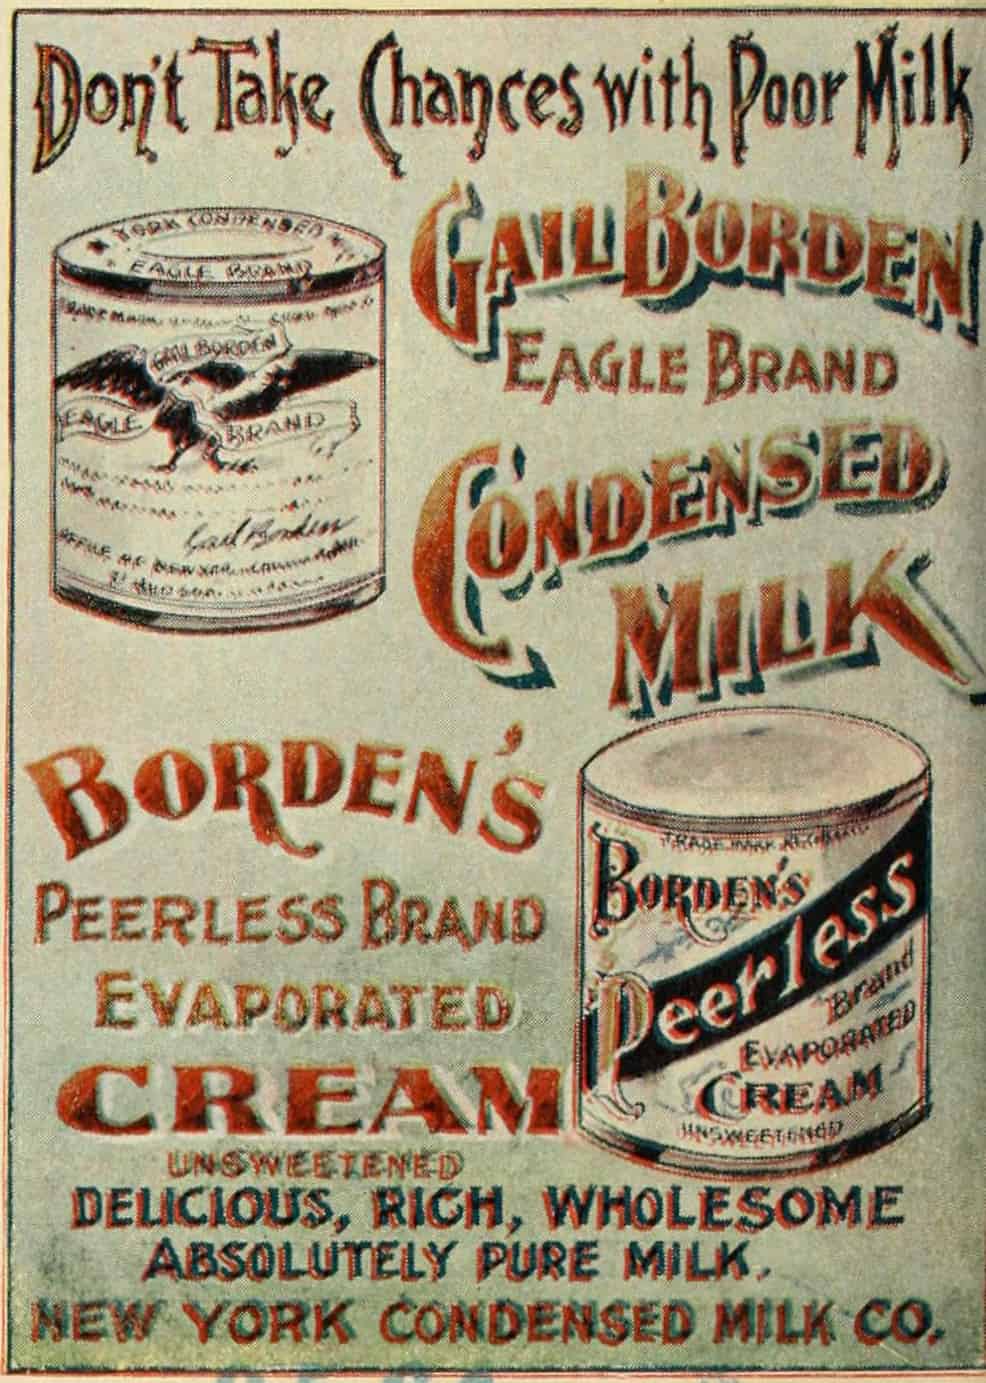 إعلان ترويجي لحليب (بوردون) المكثف.